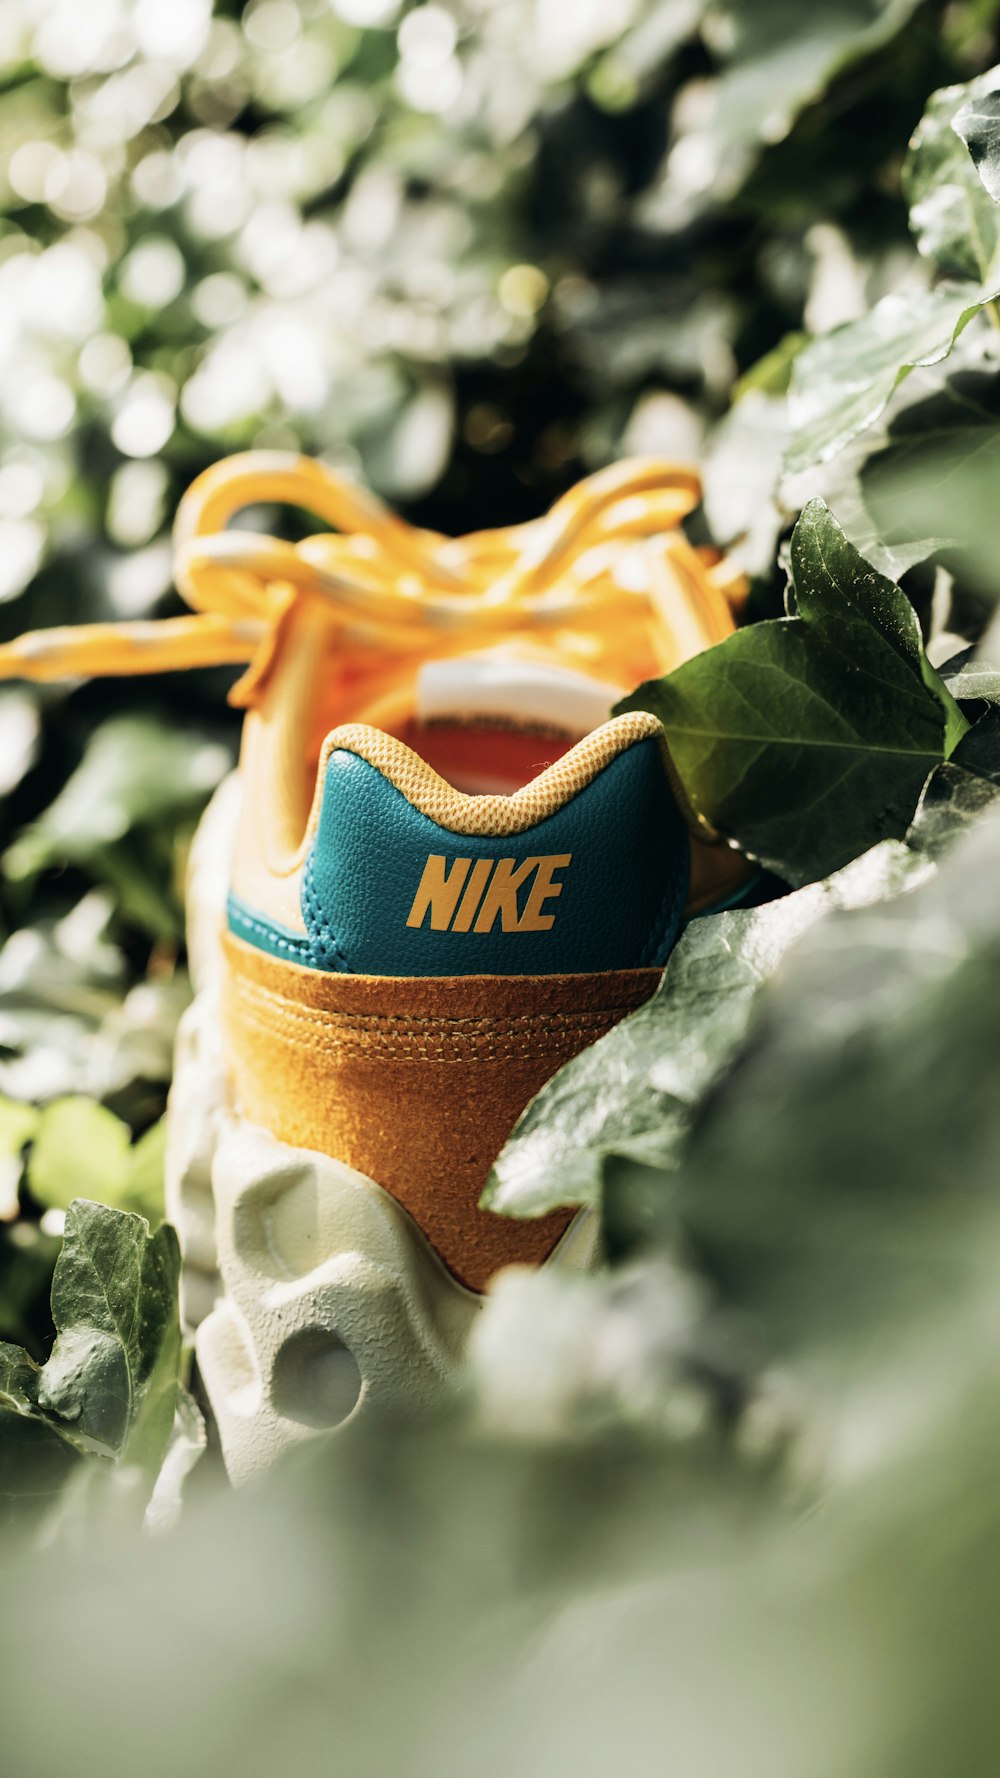 Zapatillas deportivas Nike naranjas y blancas